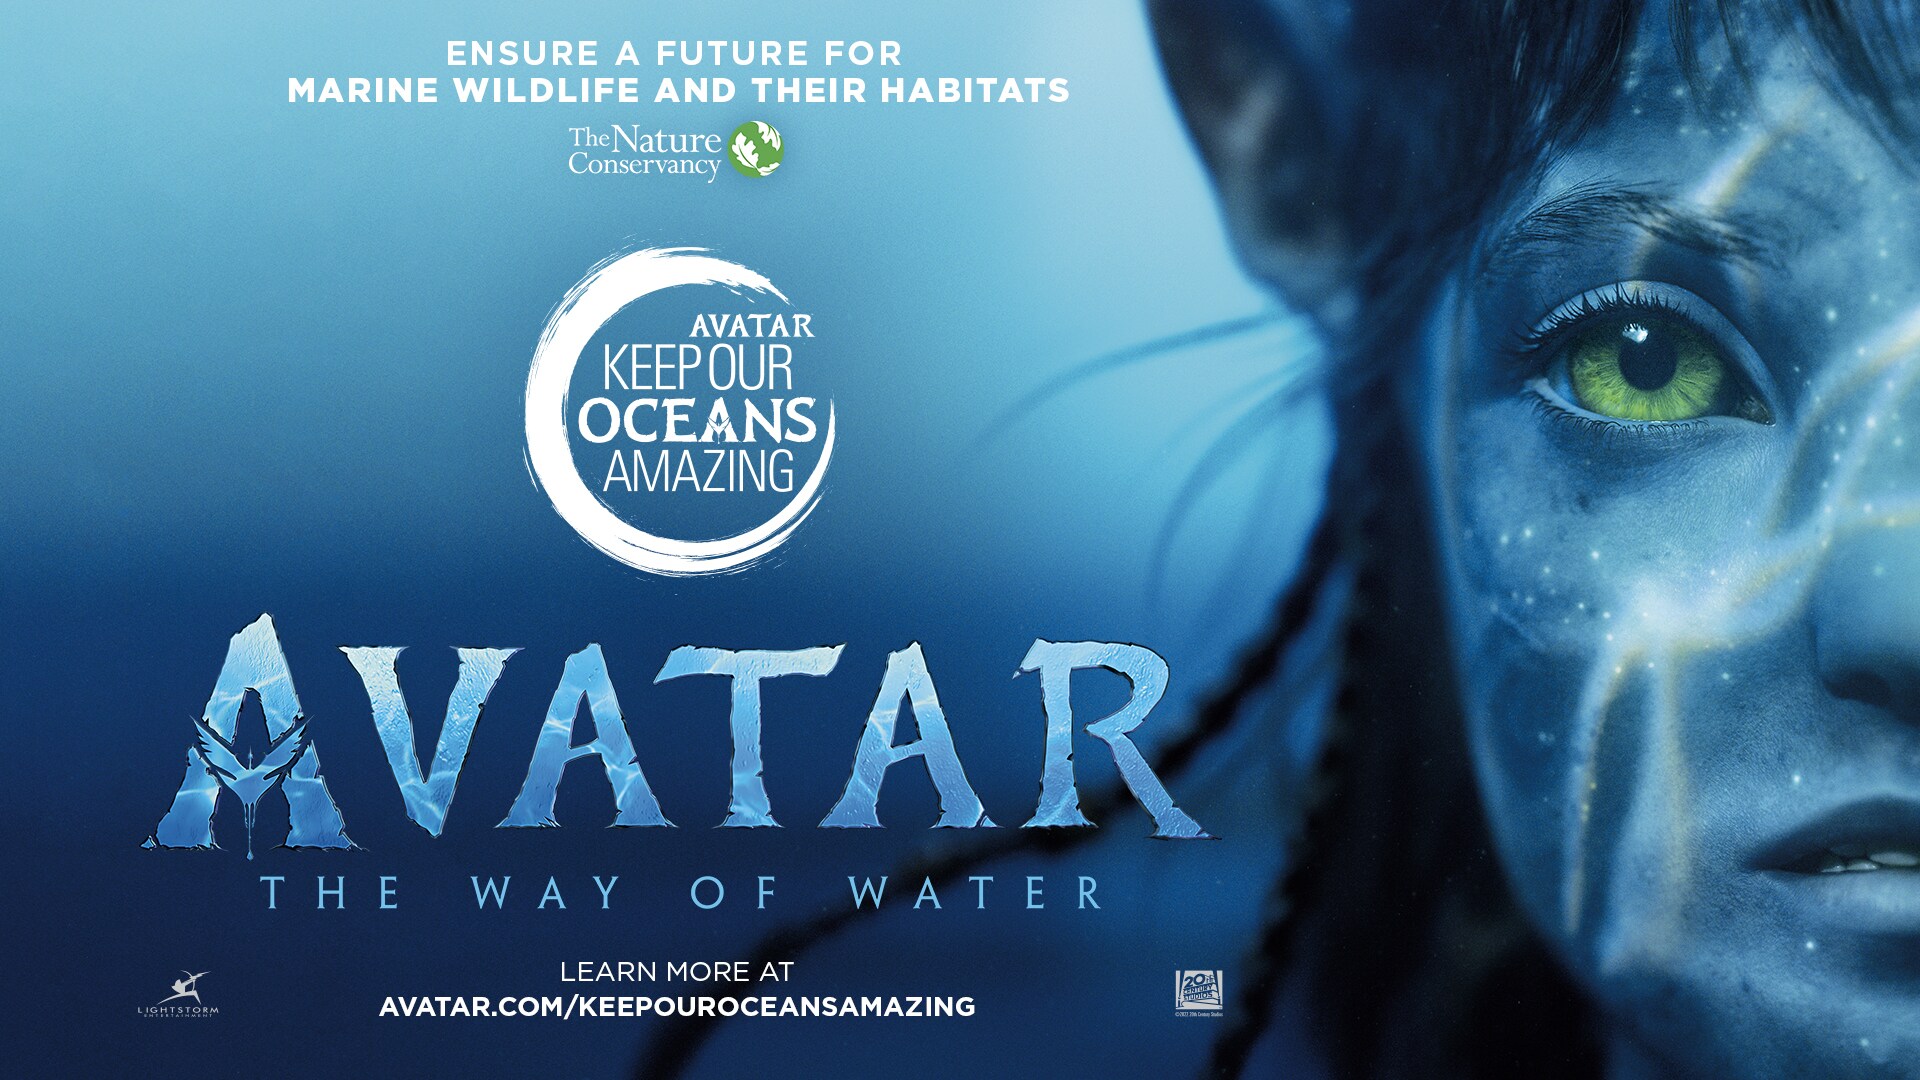 Review Phim Avatar  13 Năm Chinh Phục Khán Giả  YBOX